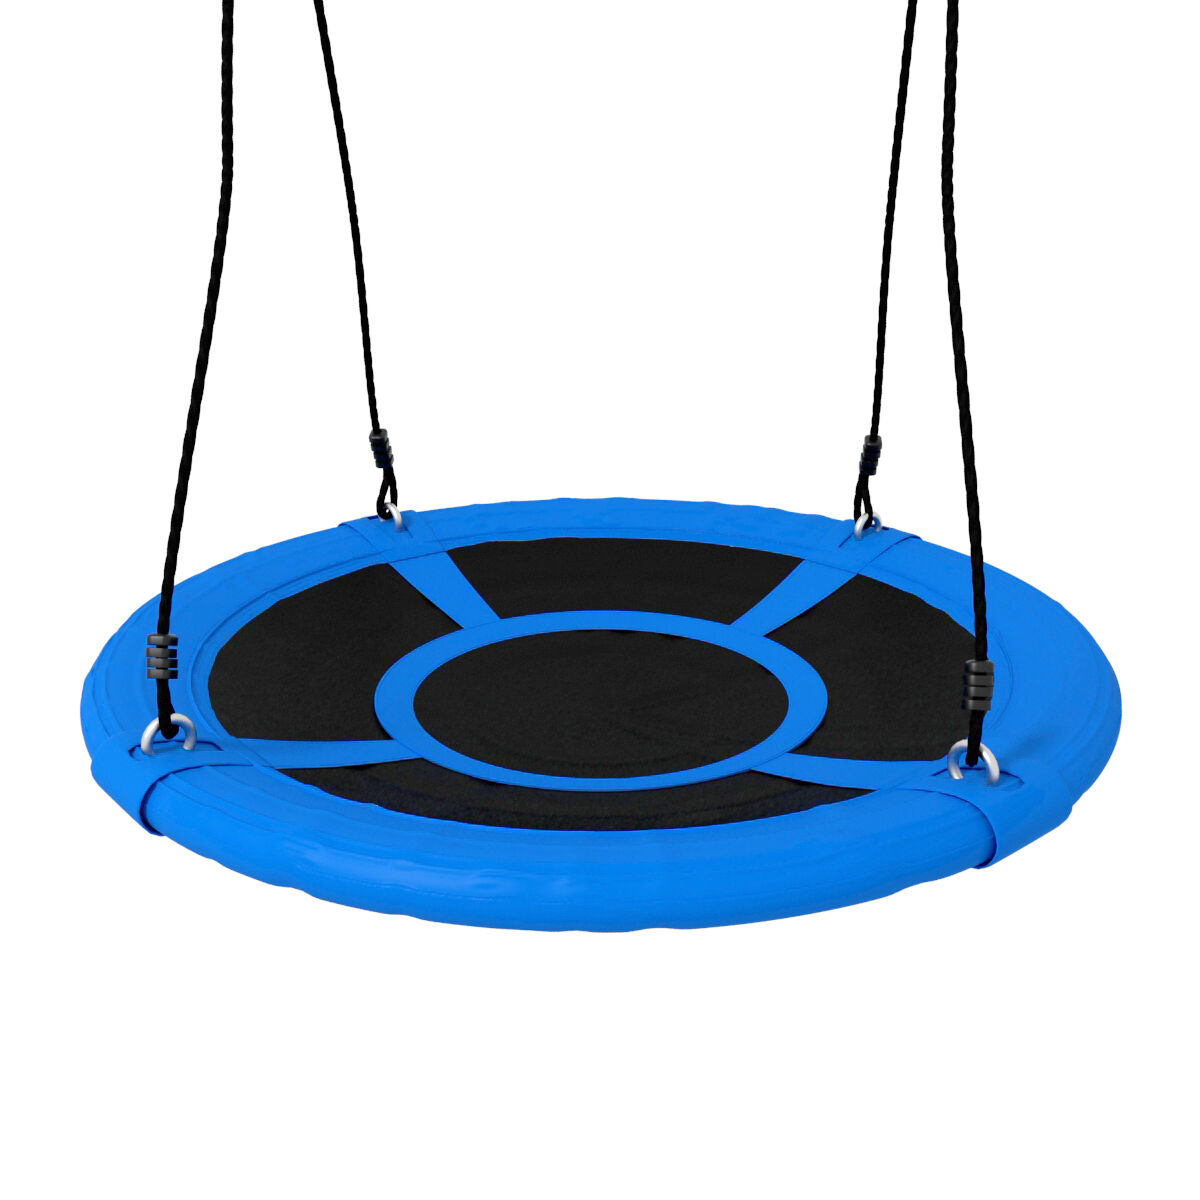 Nestschaukel mit 100cm Durchmesser in Blau